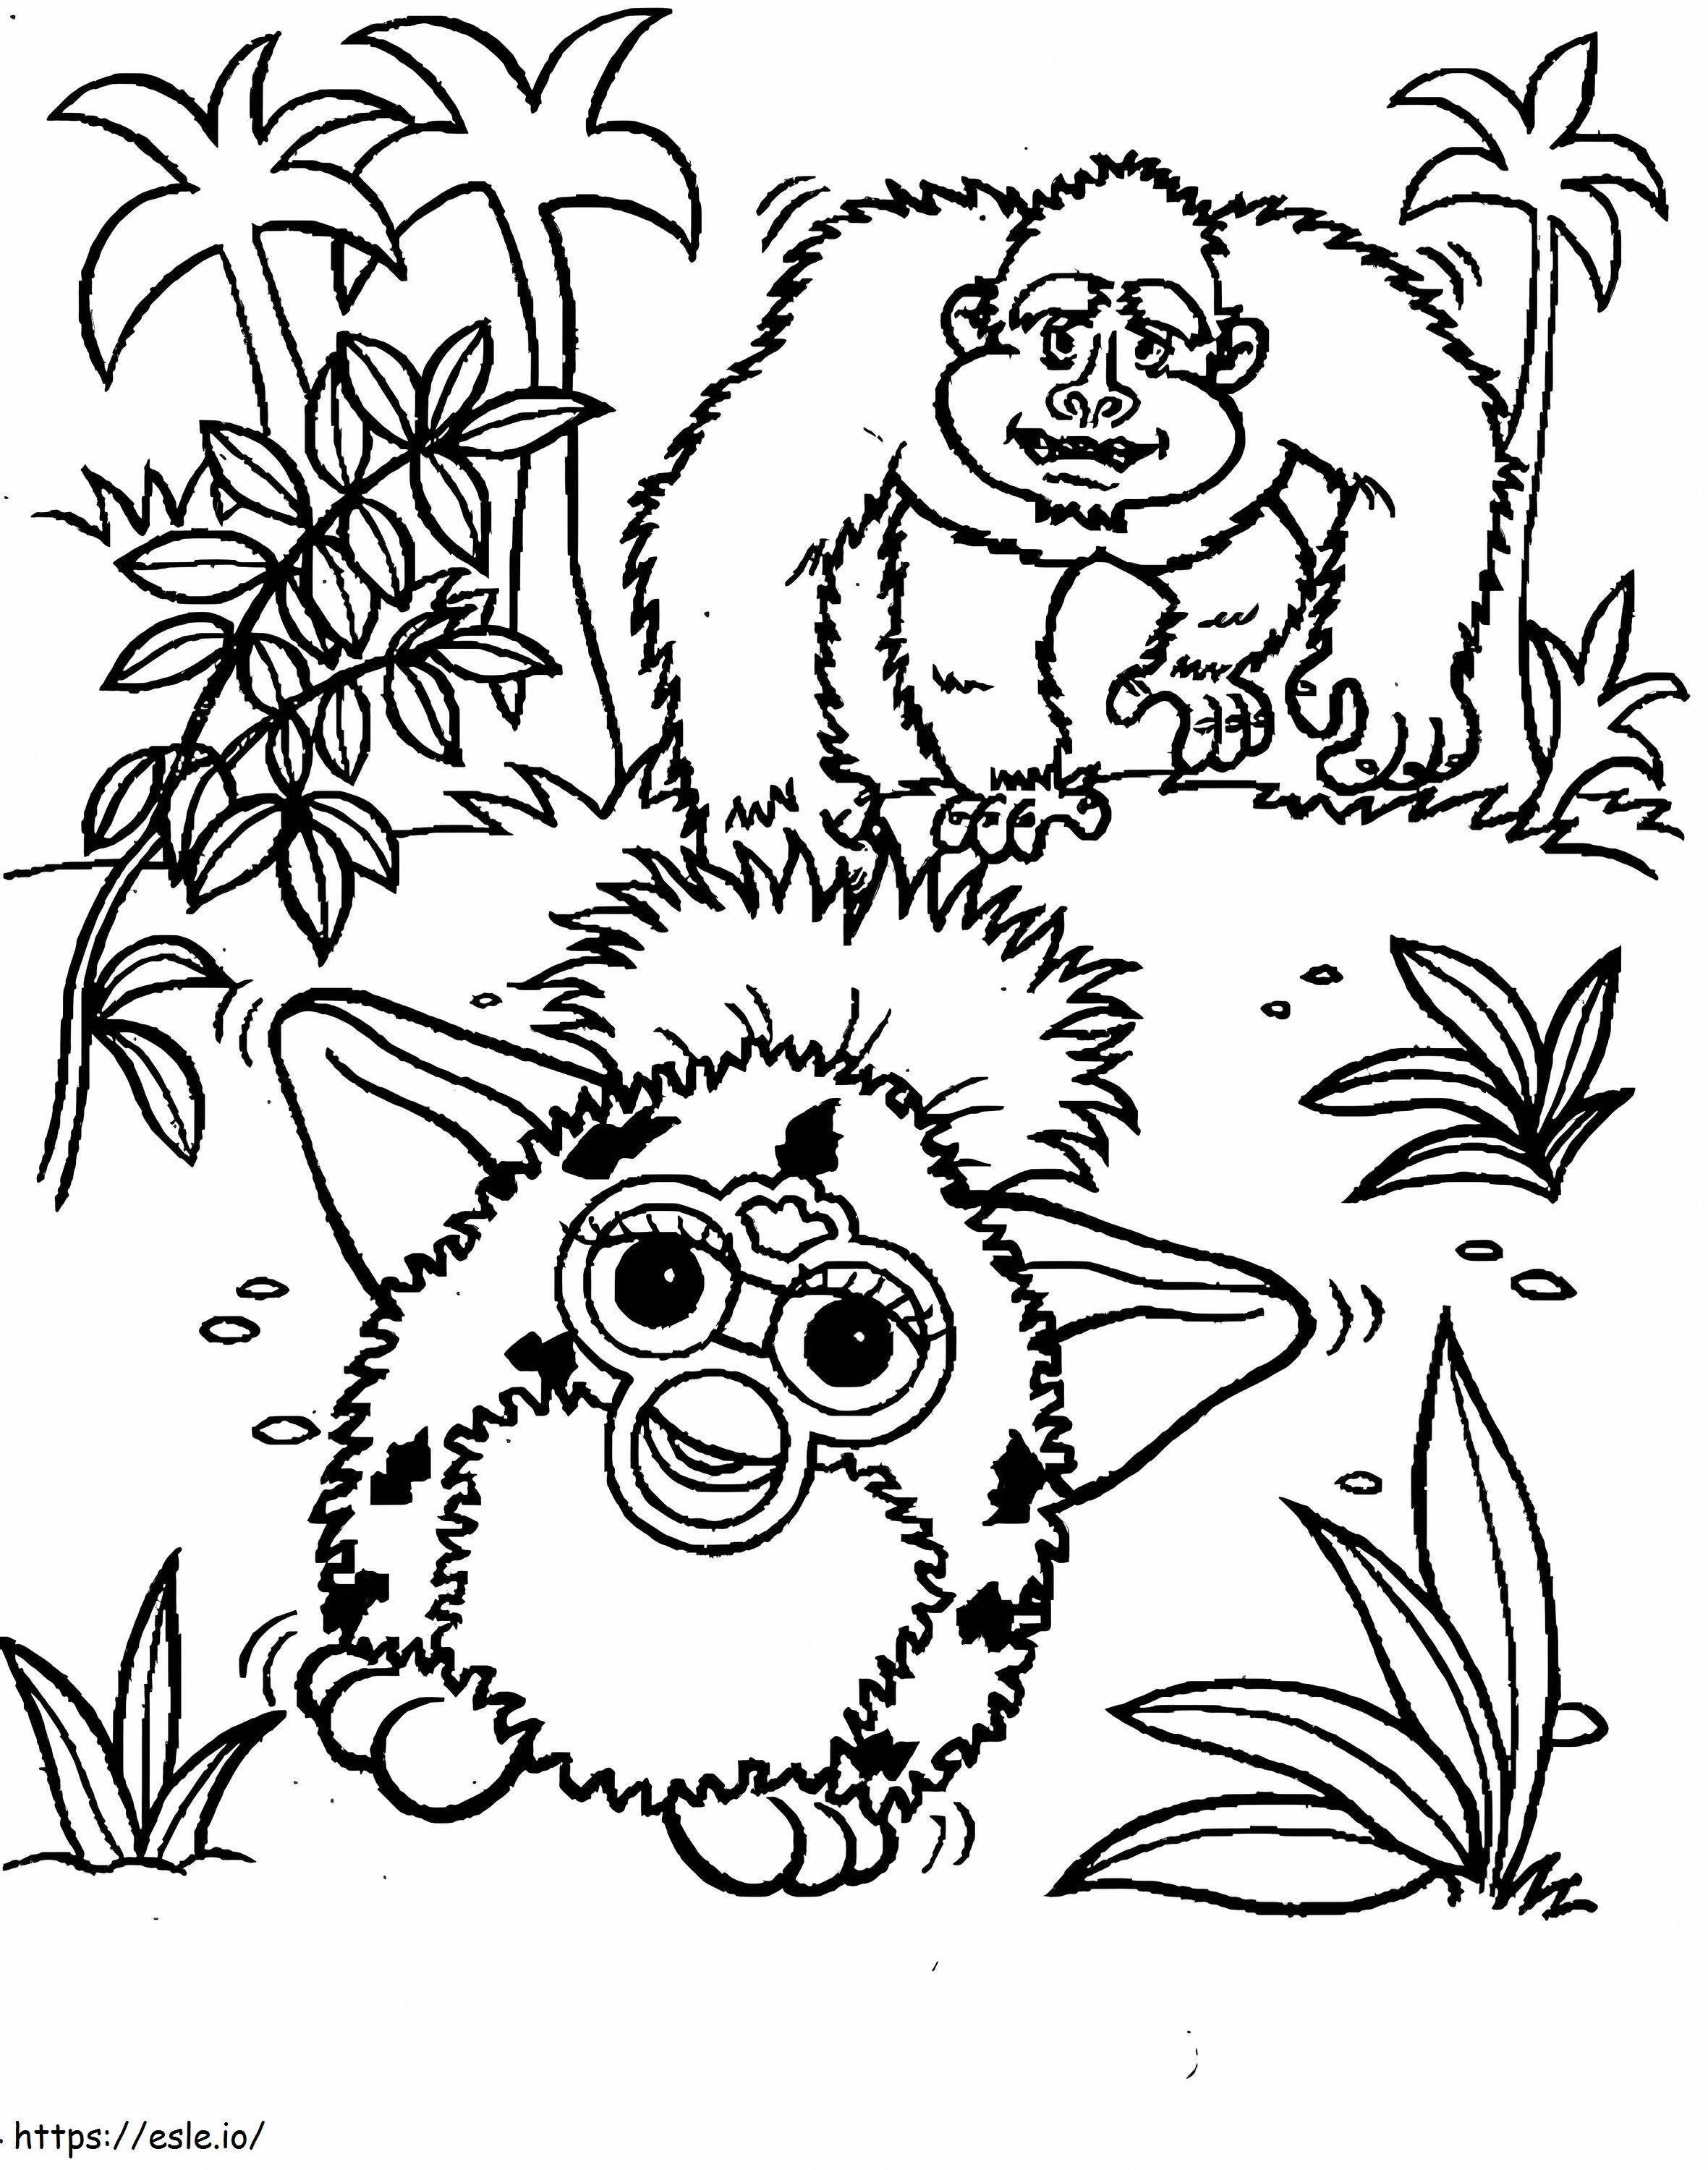 Furby e macaco para colorir